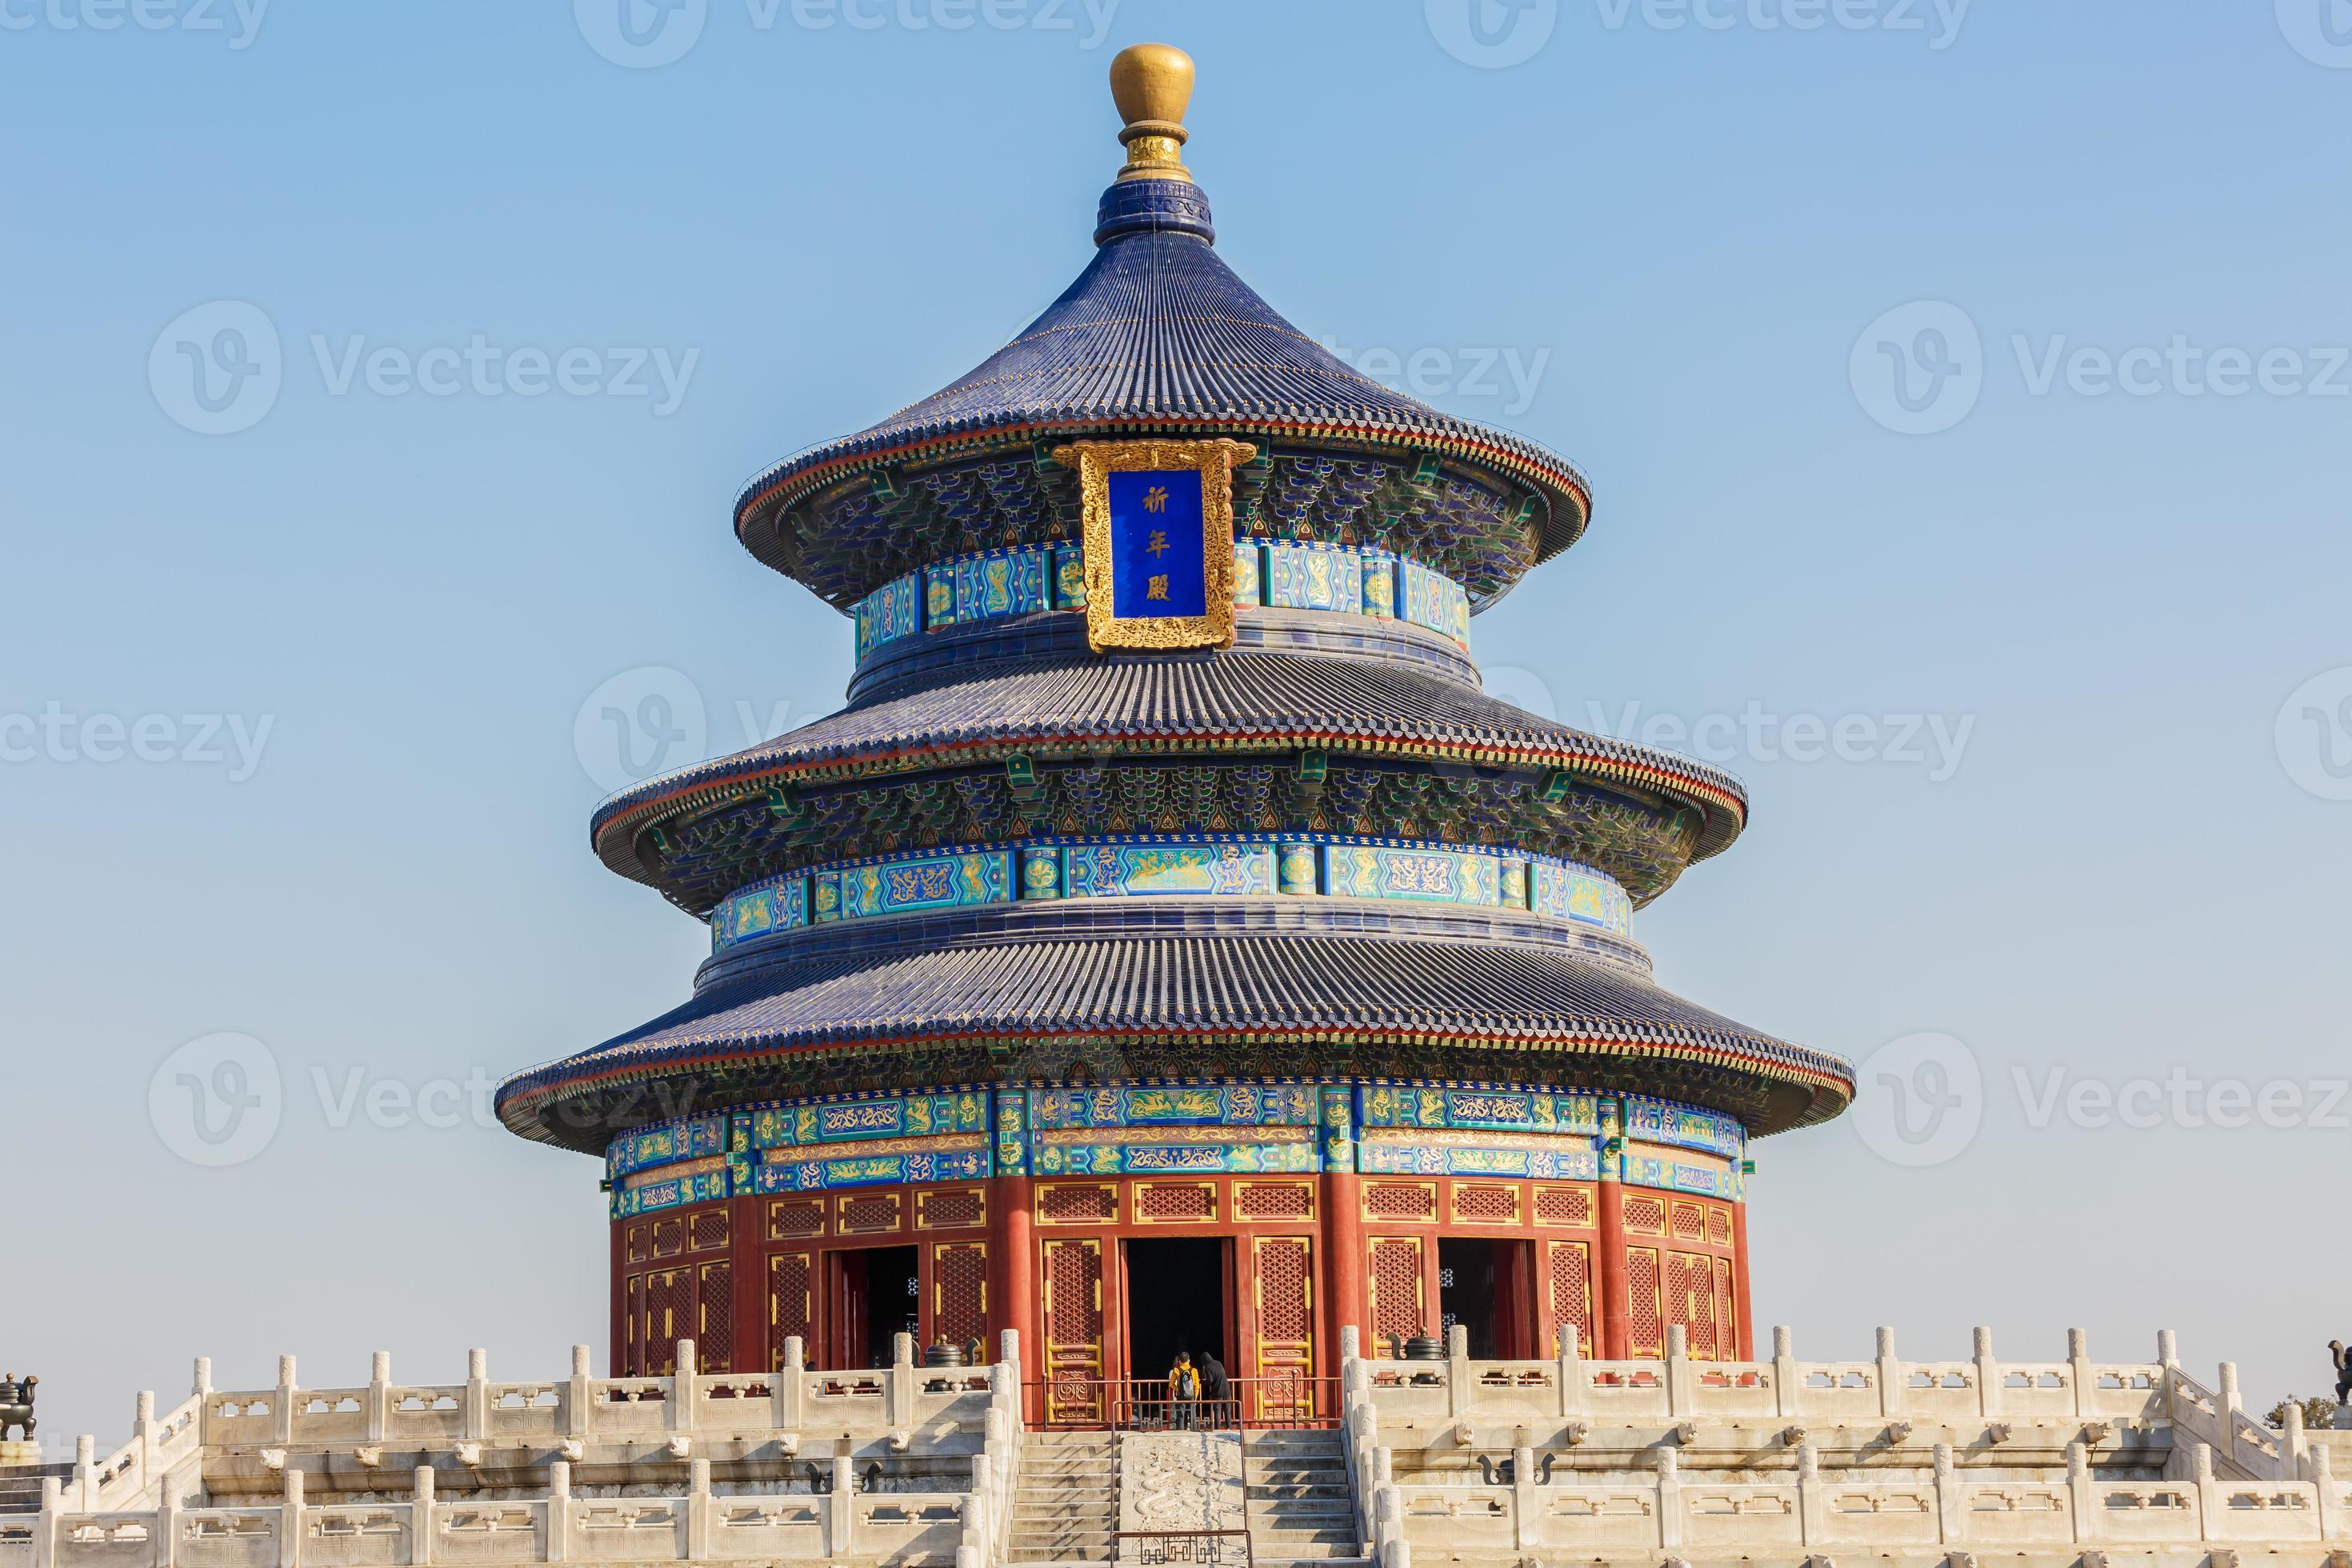 himmelens tempel i Peking, världens kulturarv foto